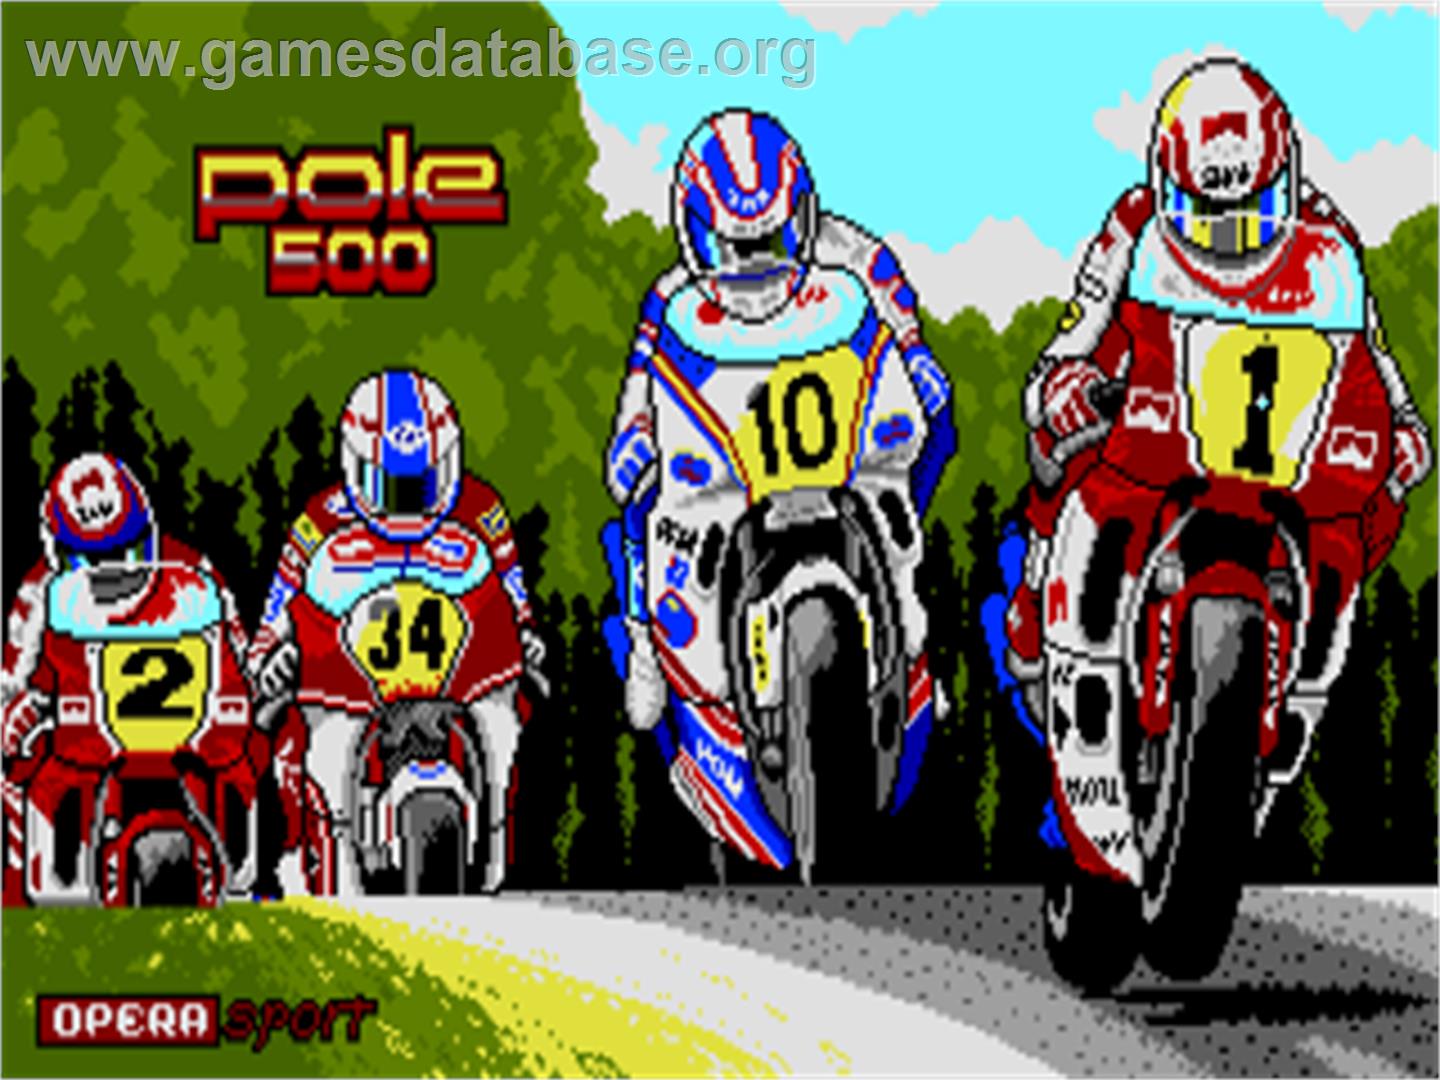 Angel Nieto Grand Prix: Pole 500 - Amstrad CPC - Artwork - Title Screen